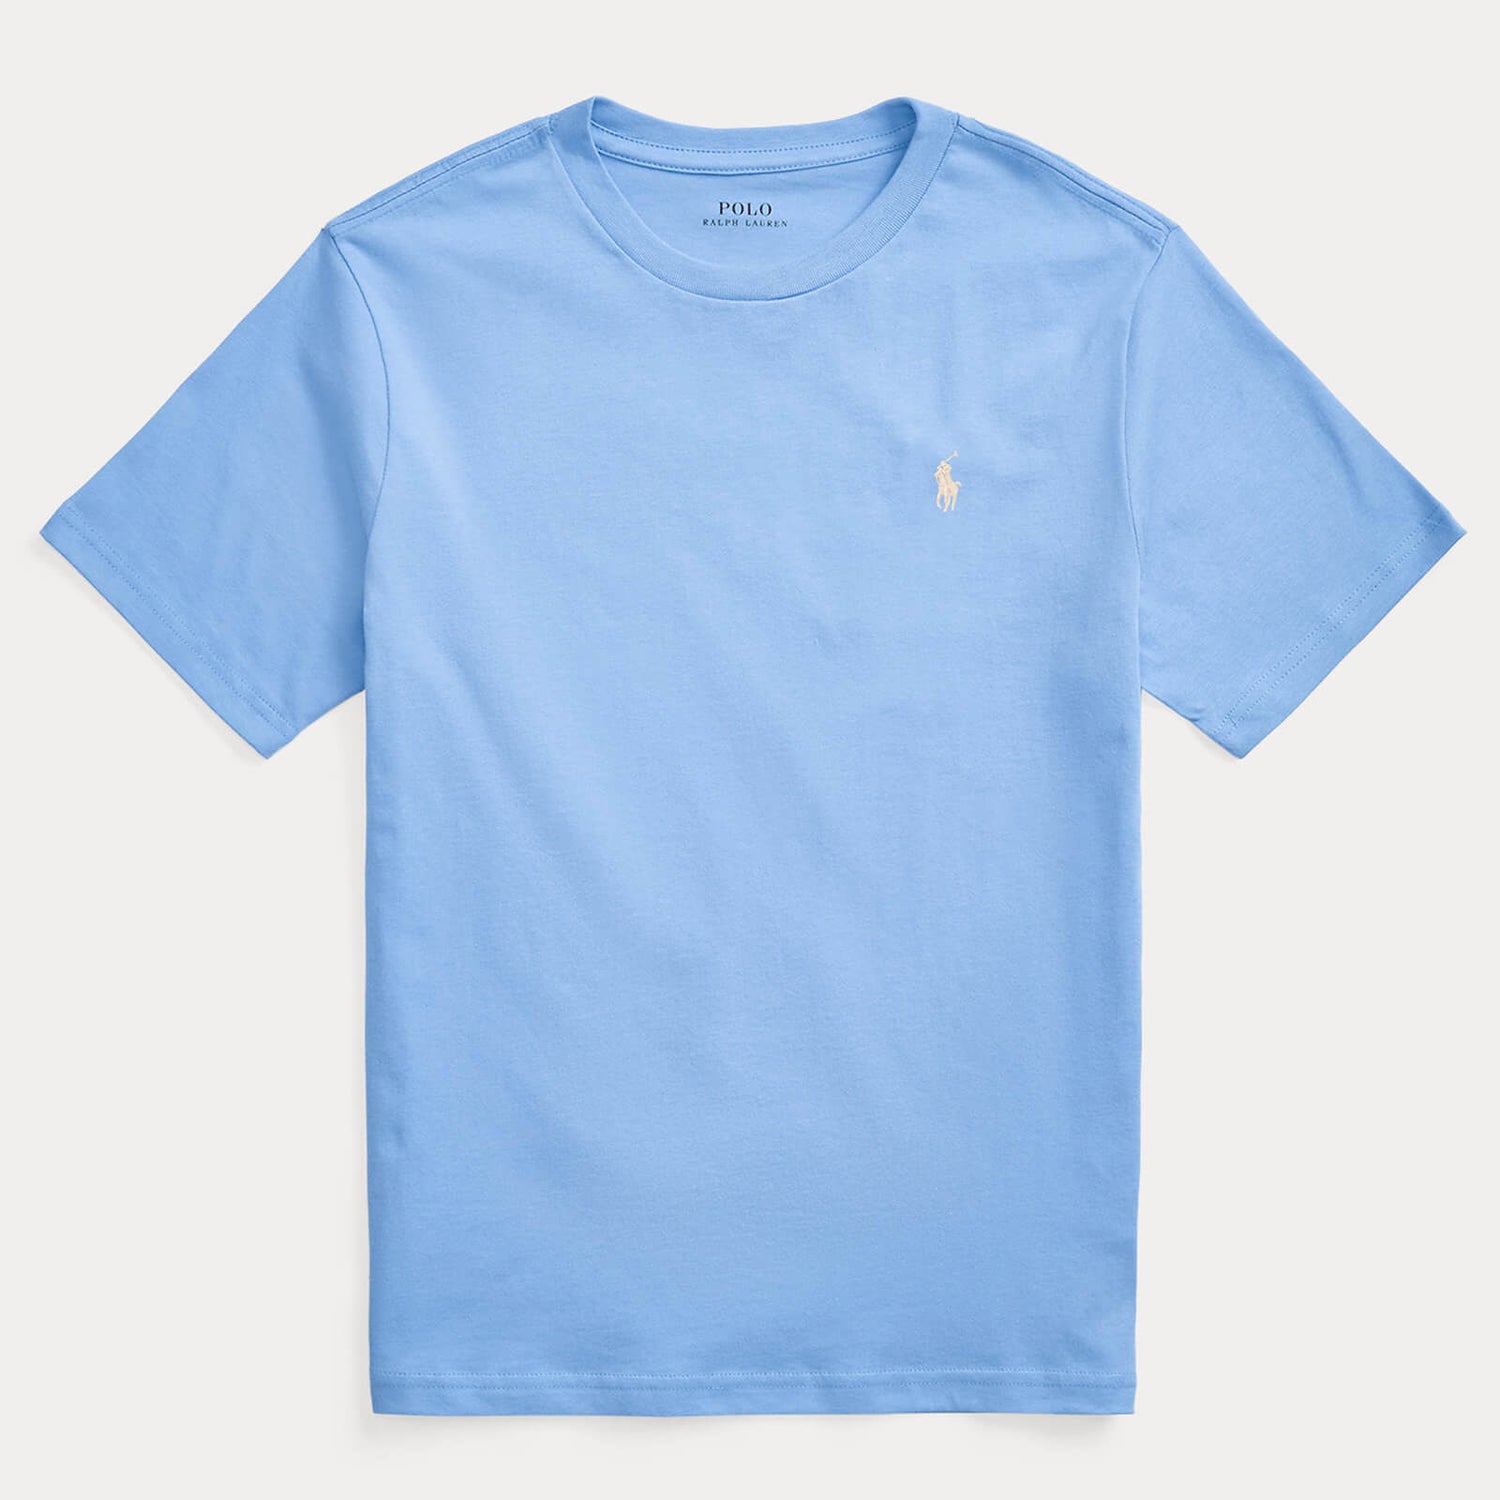 Ralph Lauren Boys' Logo T-Shirt - Sky Blue